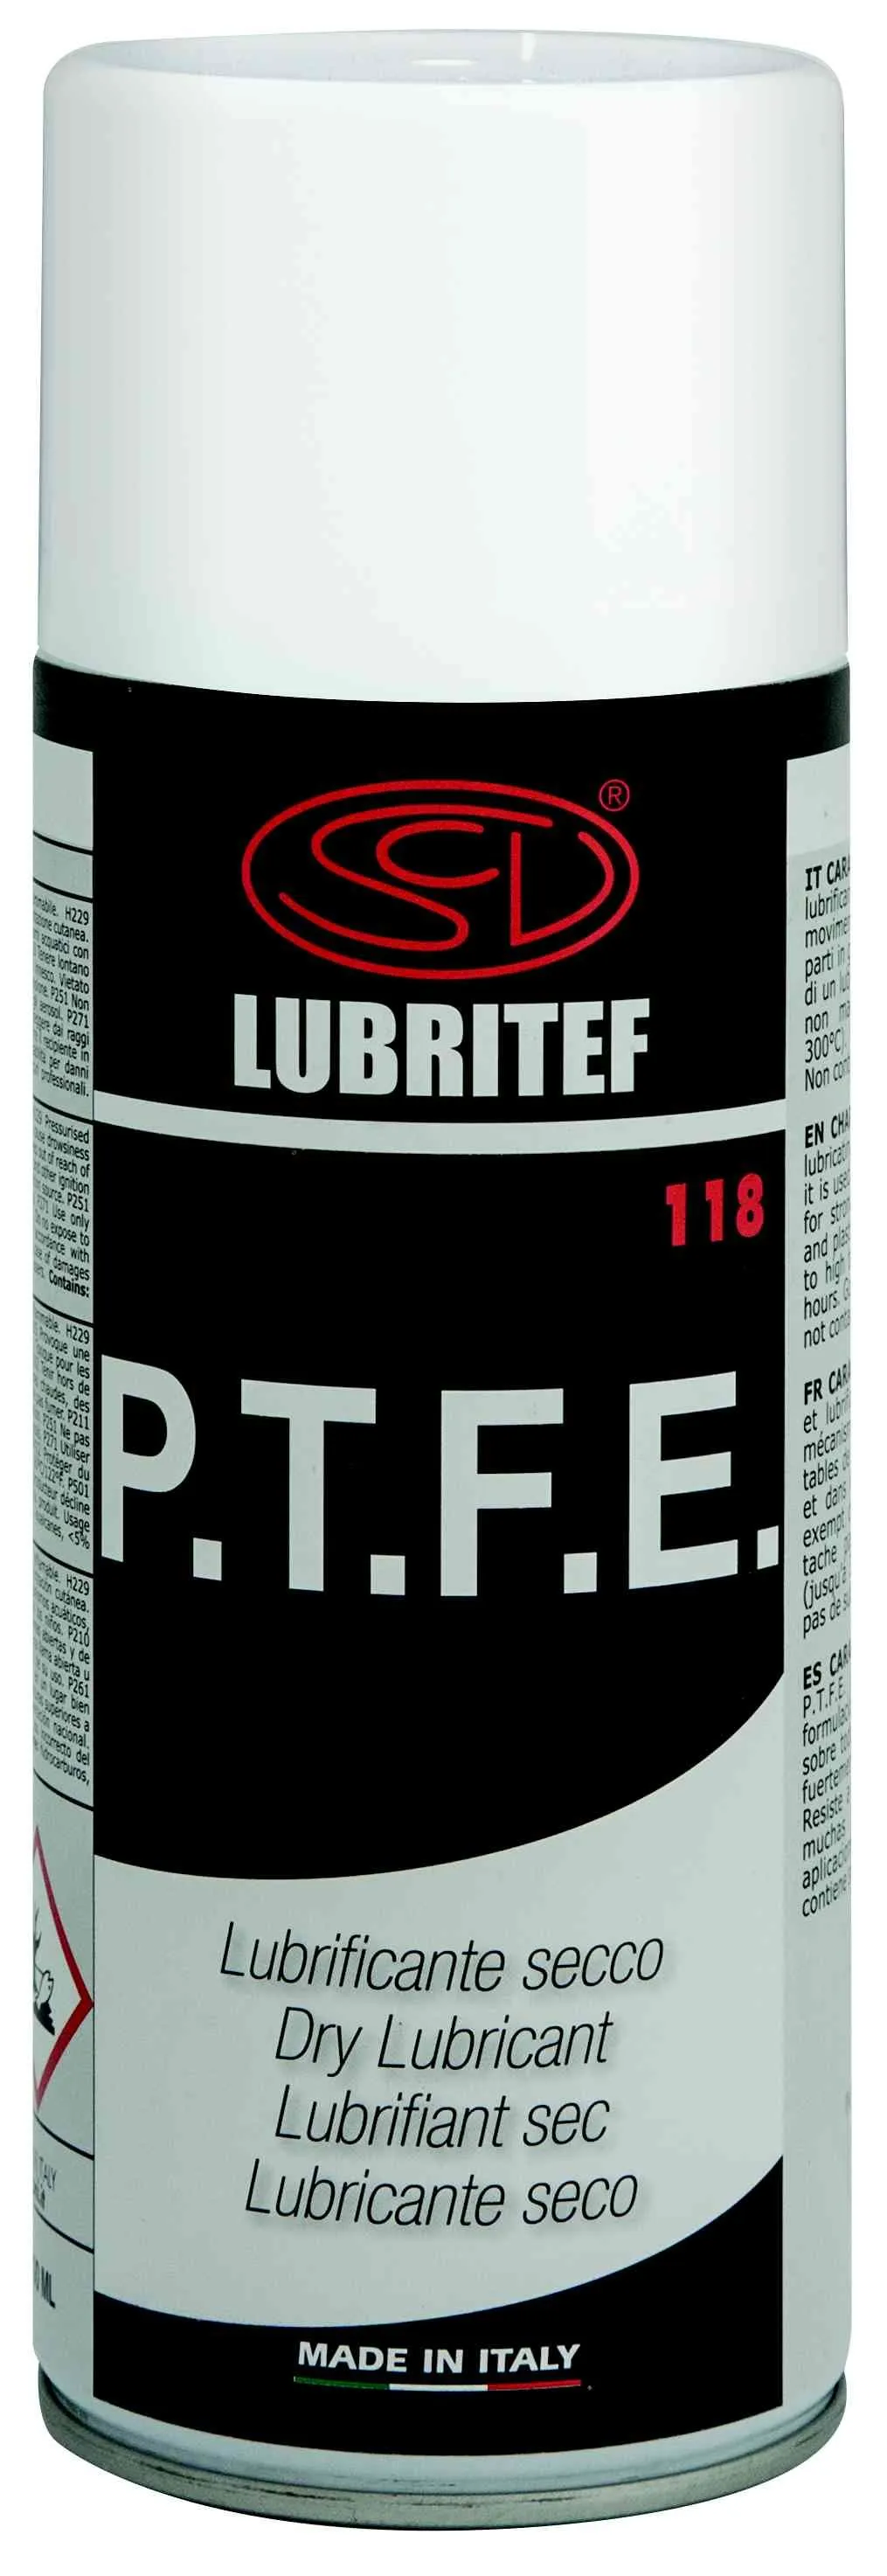 LUBRITEF Mazací sprej s PTFE 400 ml